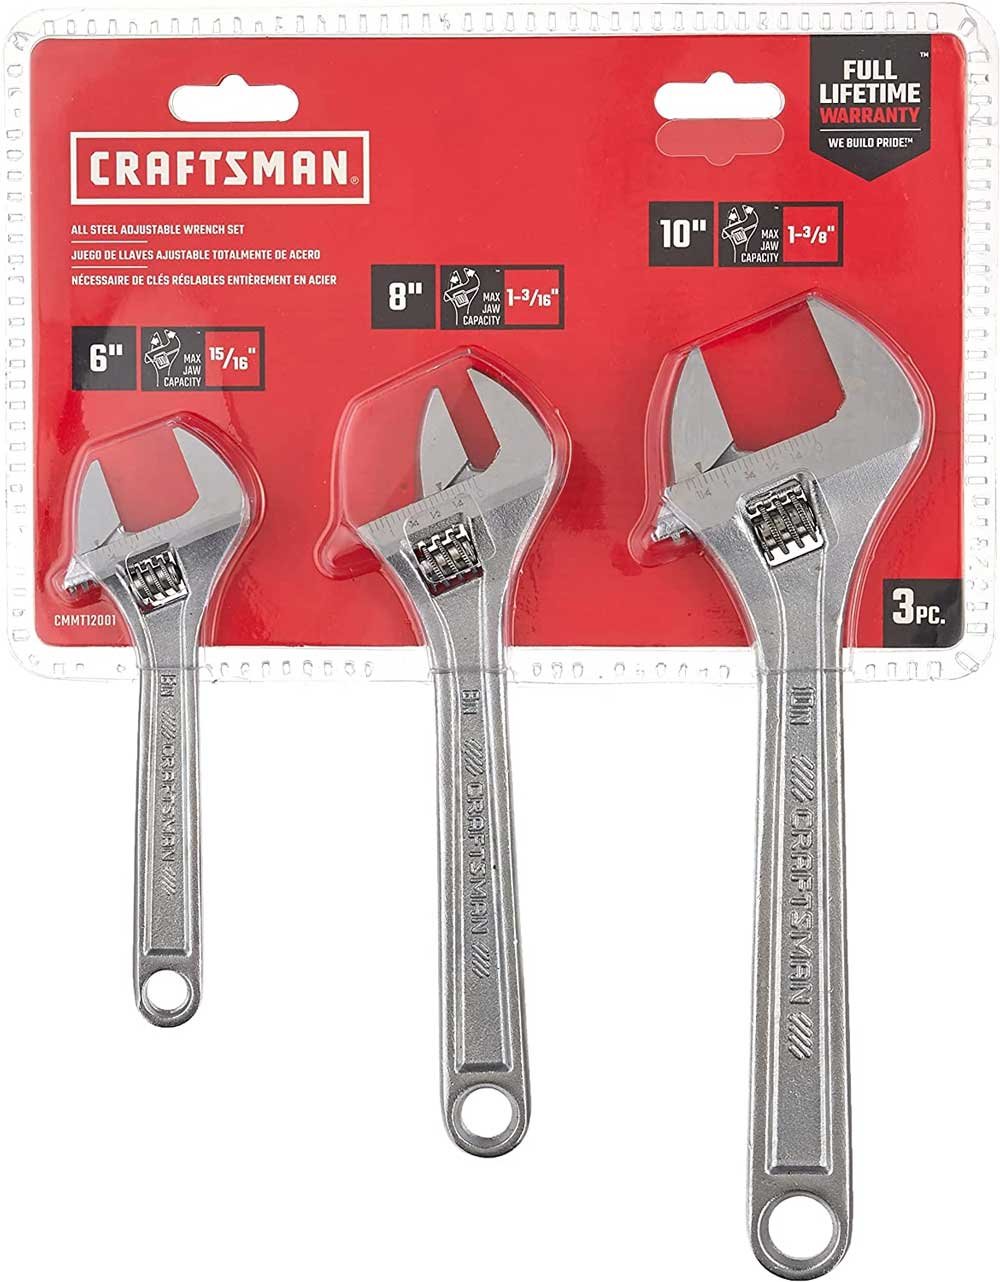 CRAFTSMAN Adjustable Wrench set